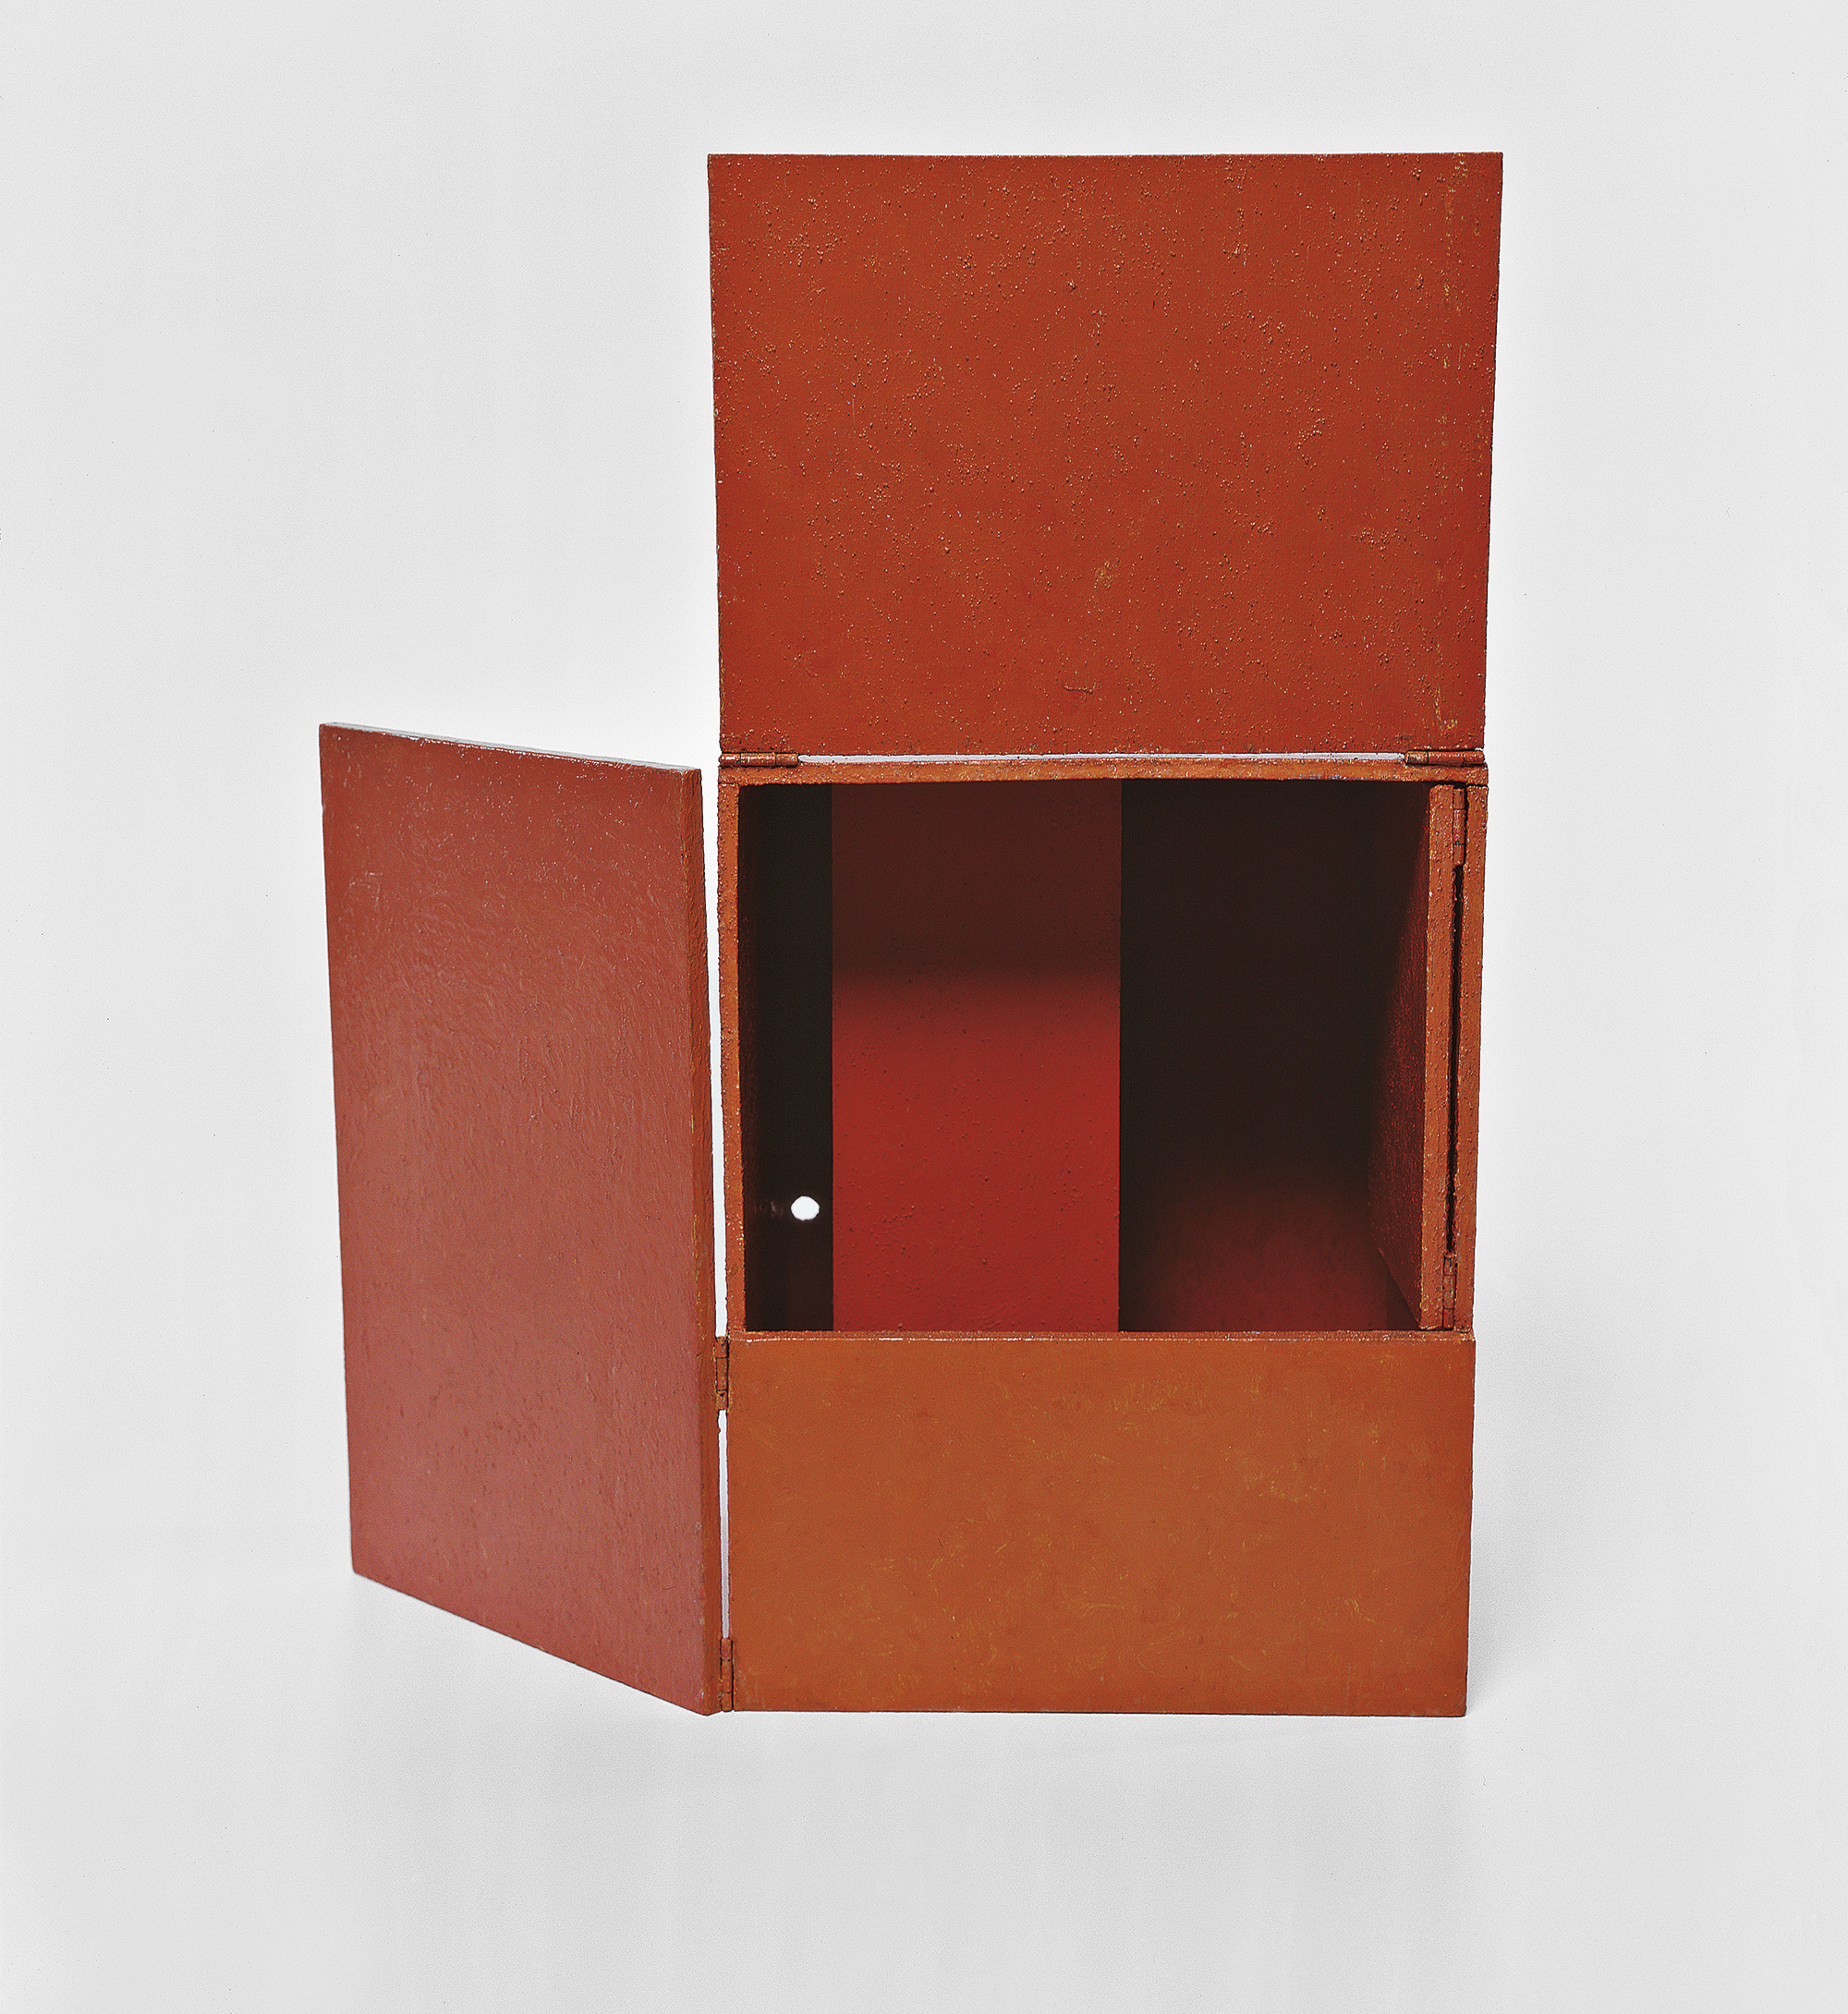 Hélio Oiticica, B 02 Bólide caixa 02, “Platônico”, 1963, Coleção César e Claudio Oiticica, Rio de Janeiro